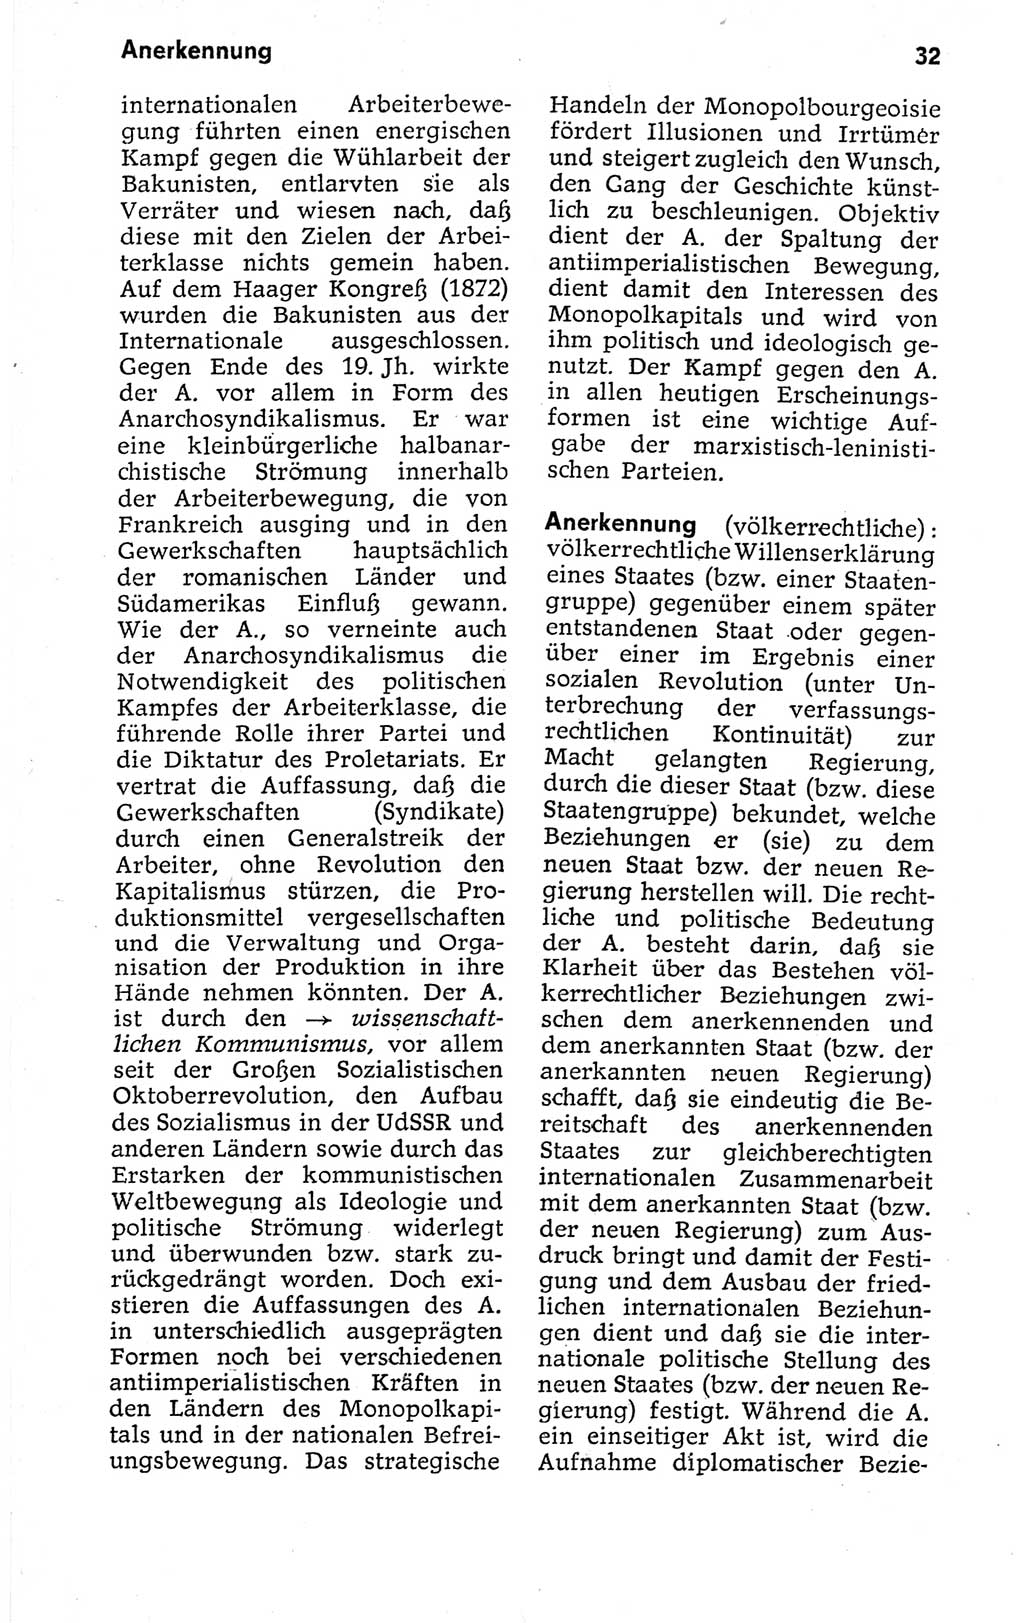 Kleines politisches Wörterbuch [Deutsche Demokratische Republik (DDR)] 1973, Seite 32 (Kl. pol. Wb. DDR 1973, S. 32)